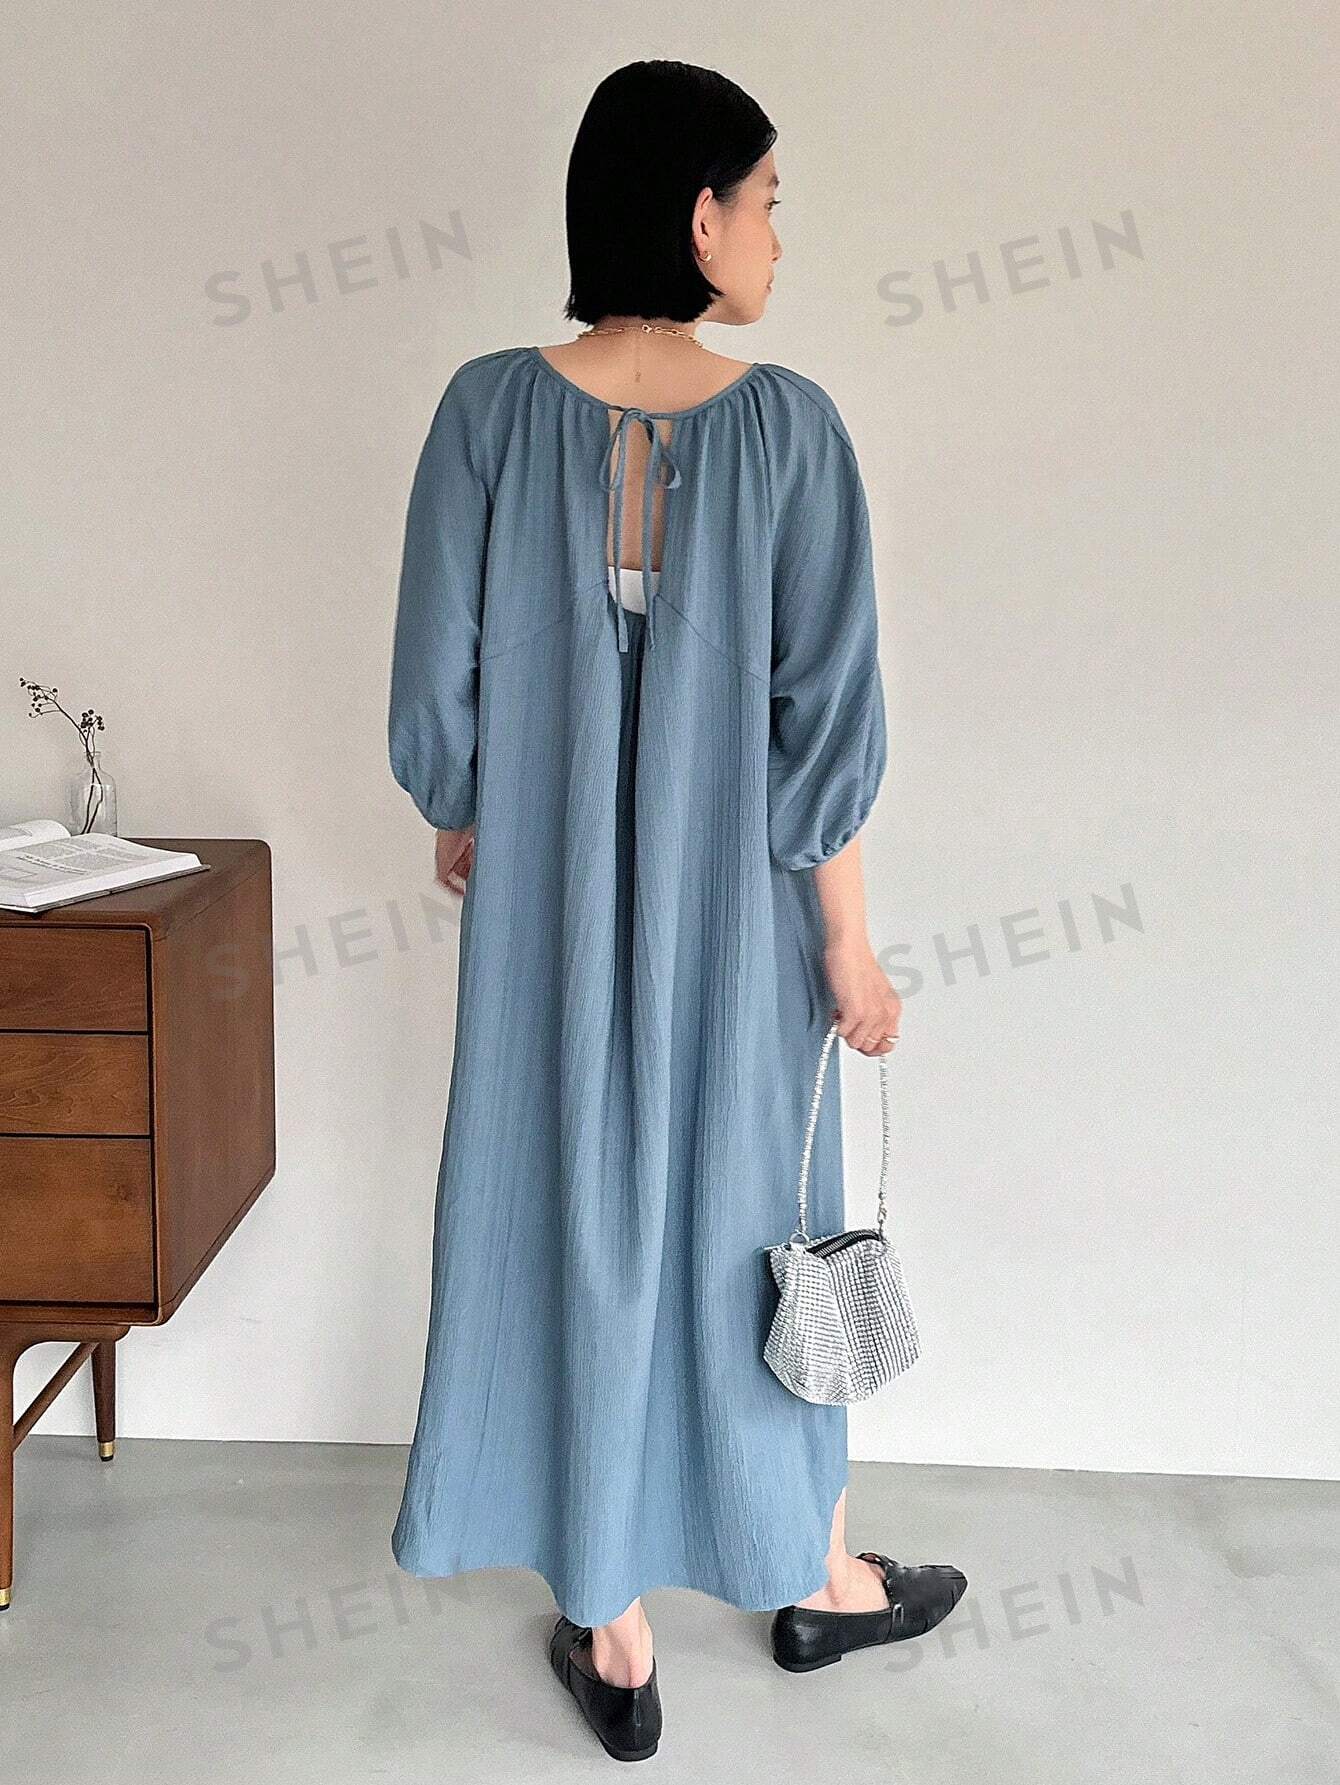 FRIFUL женское однотонное повседневное платье свободного кроя с воротником на завязке сзади, синий